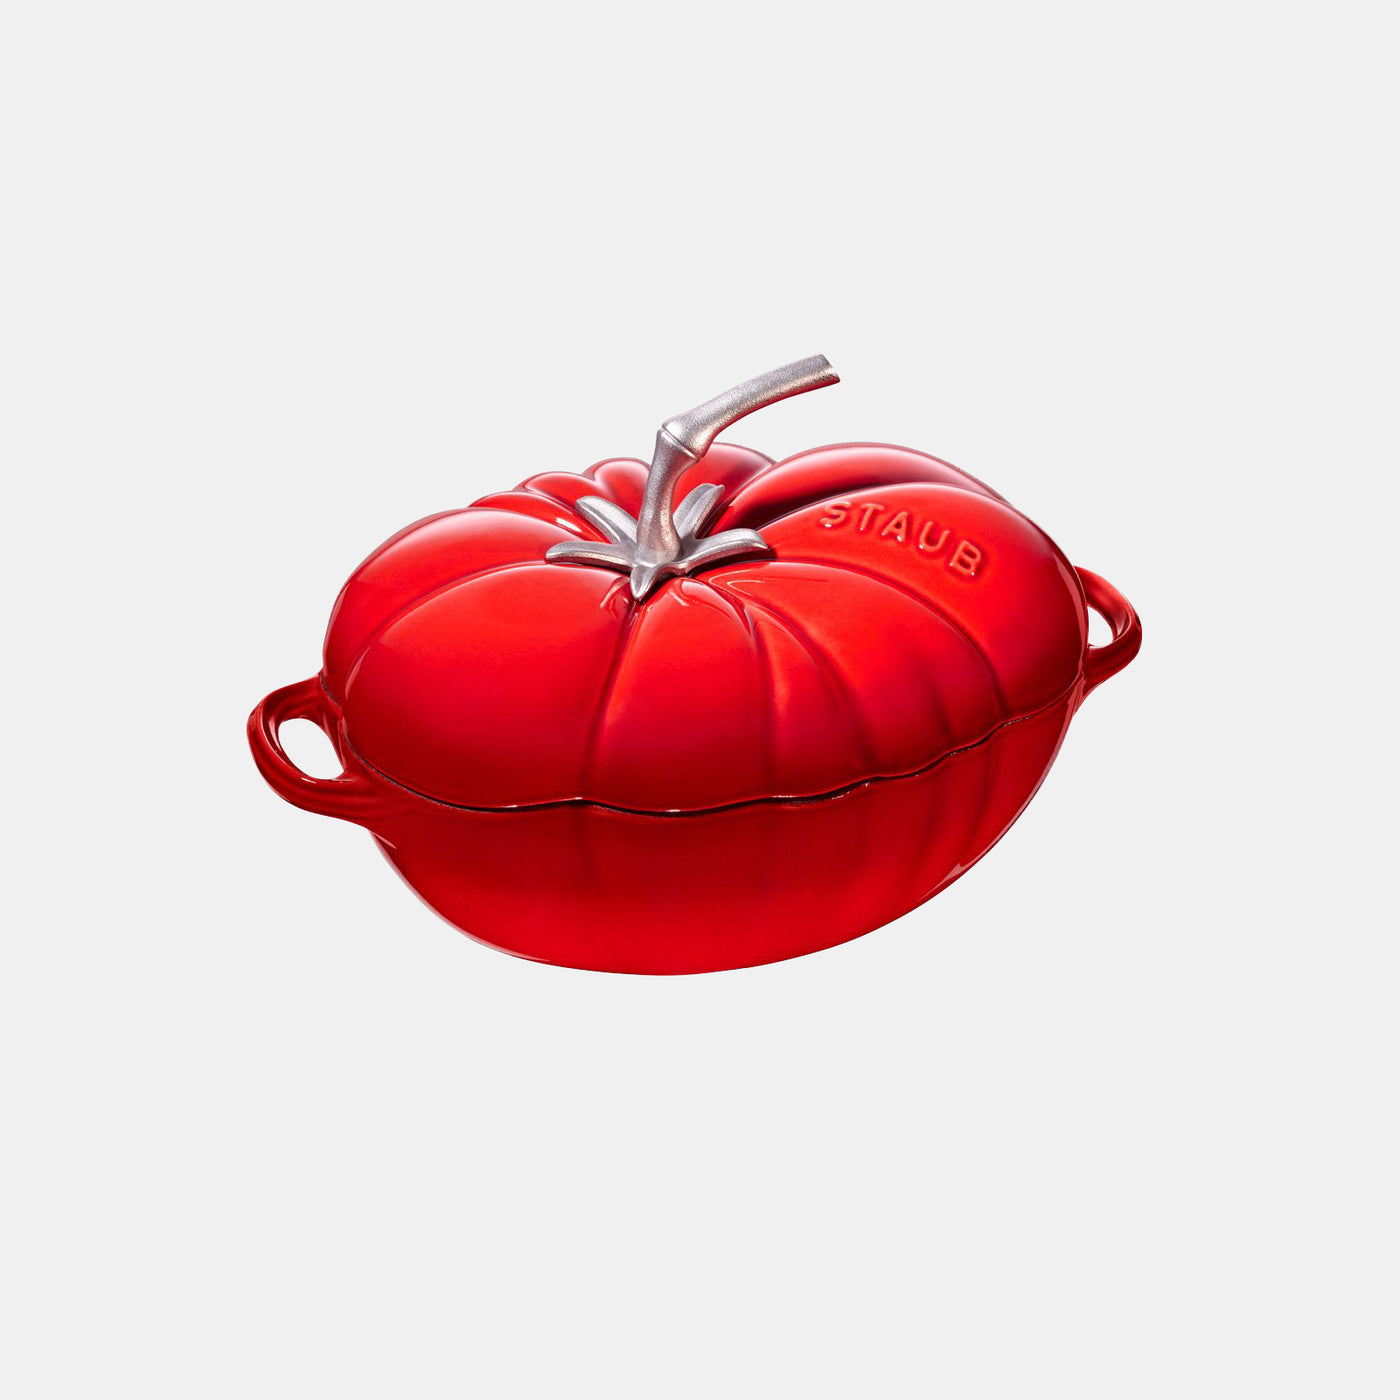 Tomato Cocotte - 25cm